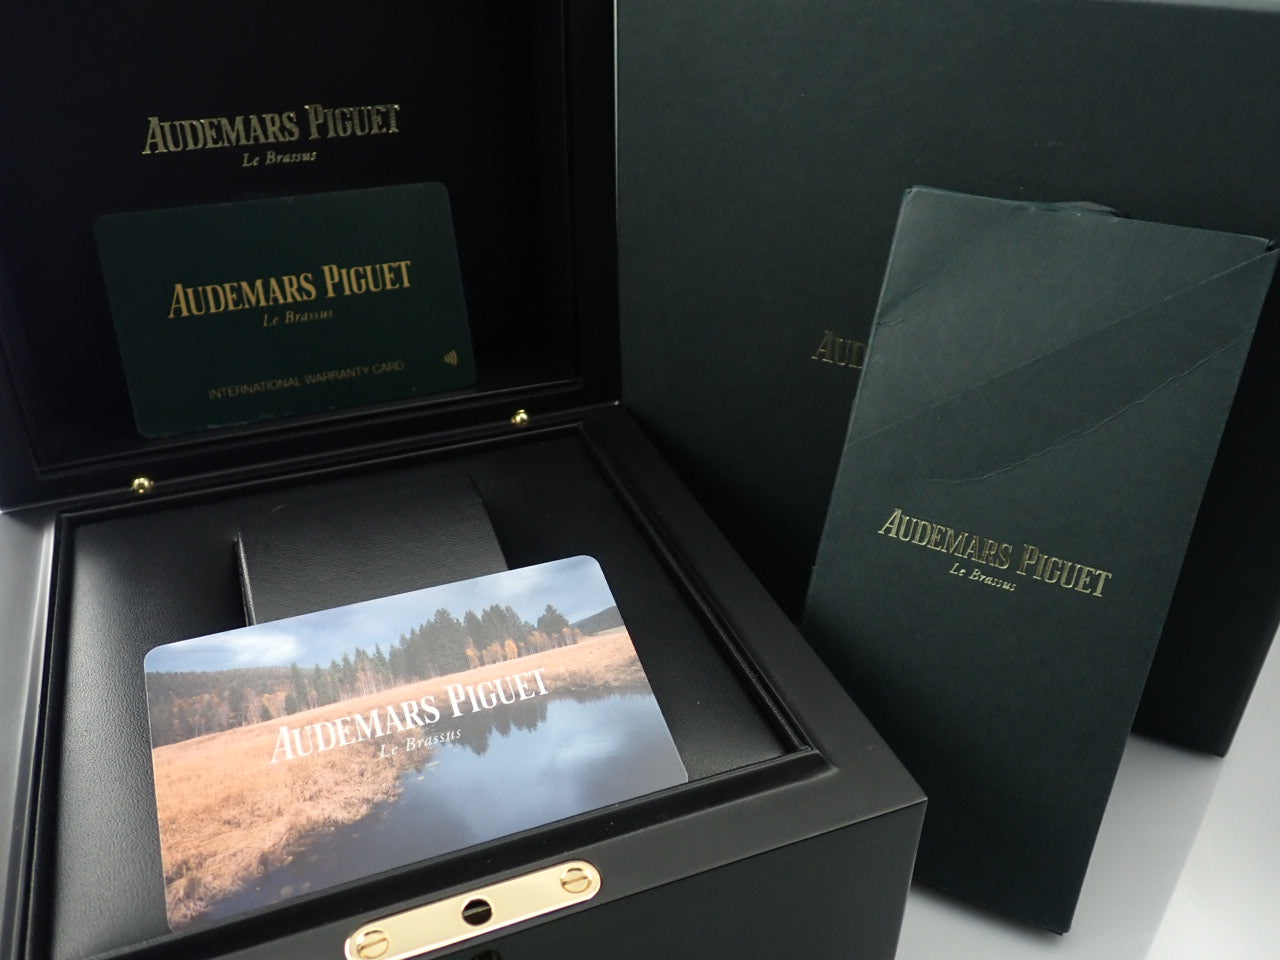 Audemars Piguet Royal Oak Offshore Chronograph Boutique Limited Edition &lt;Warranty, Box, etc.&gt;